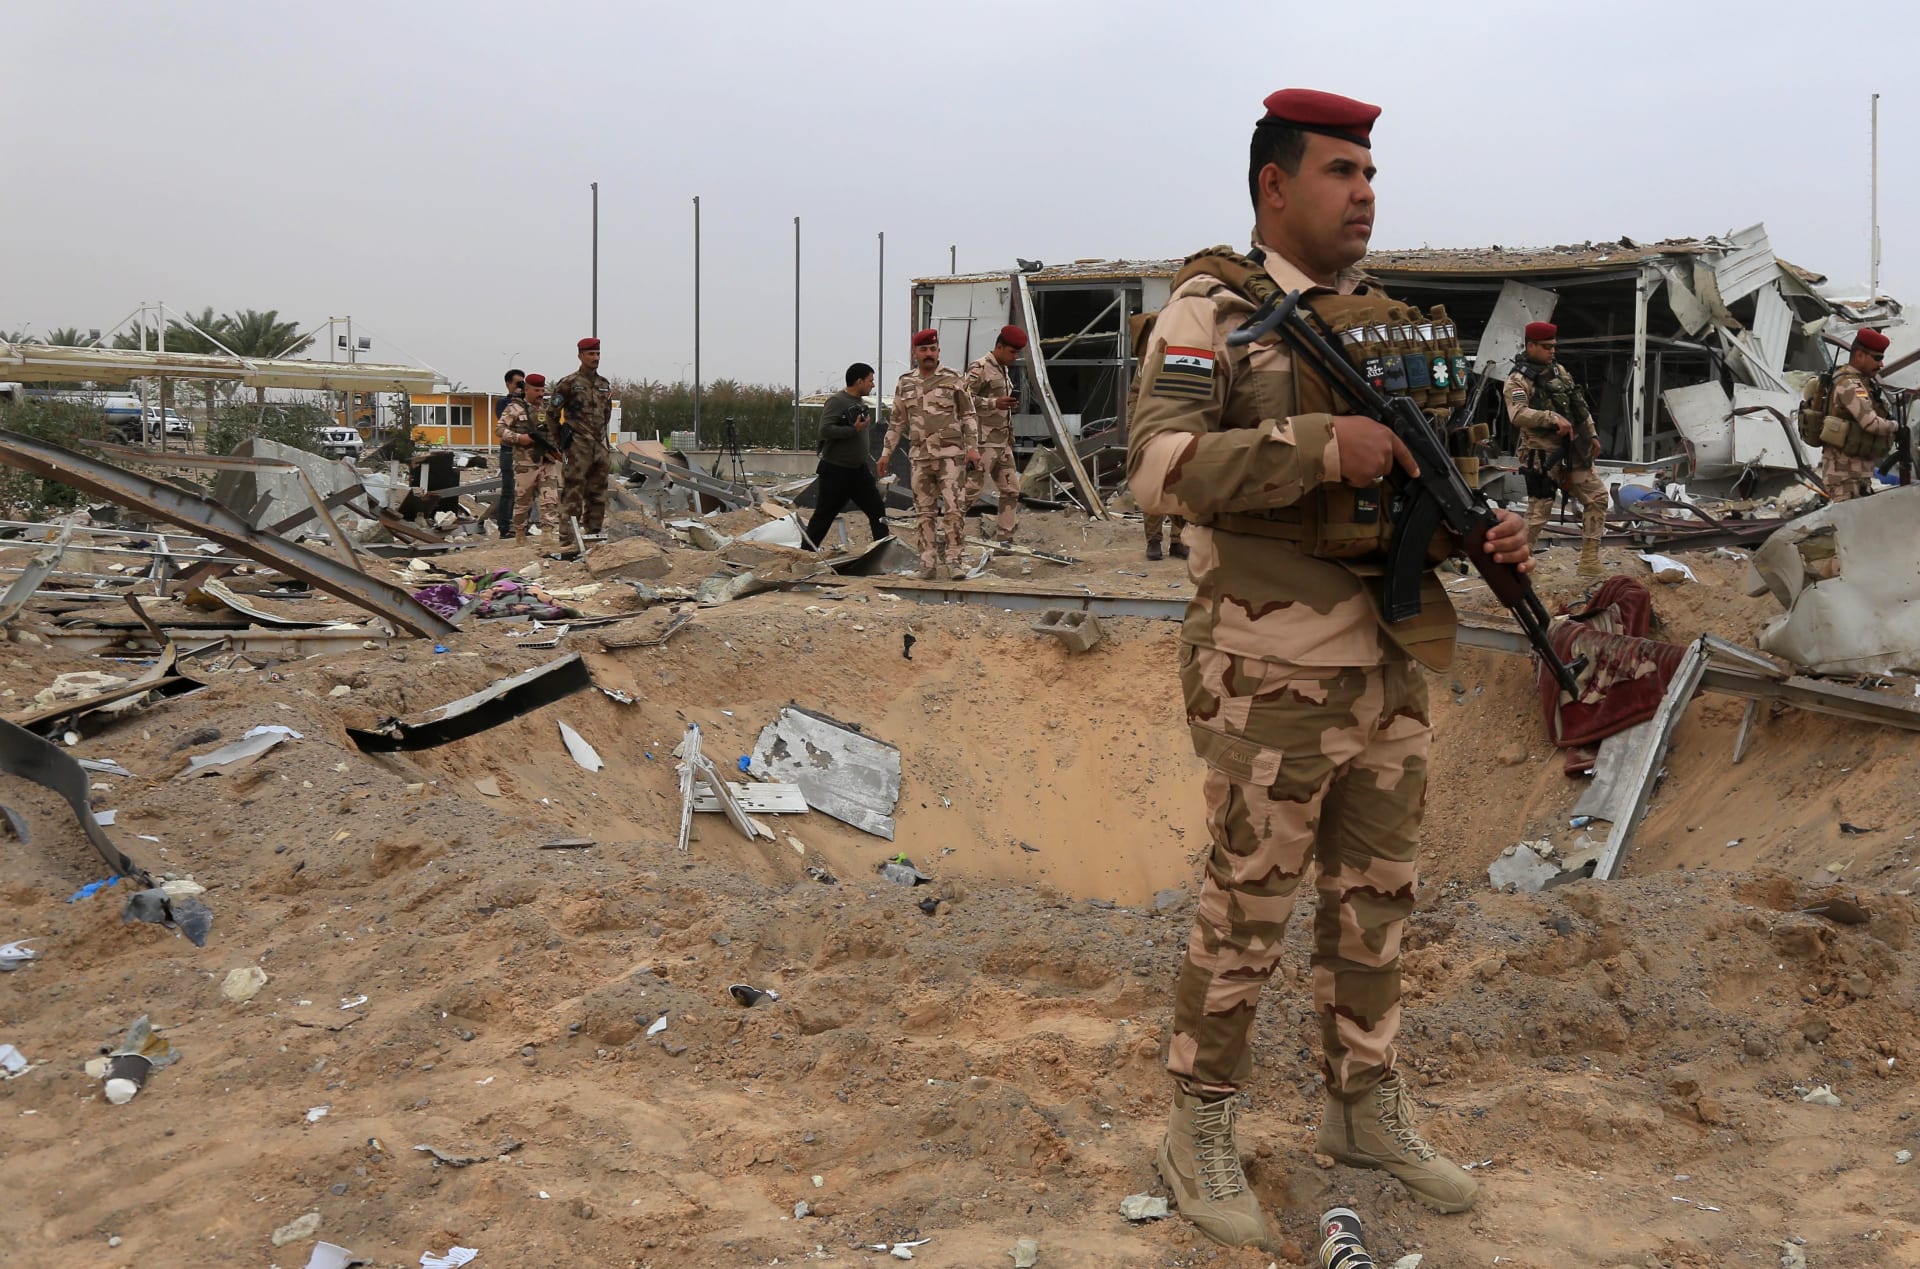 الجيش العراقي: سقوط 4 صواريخ على معسكر يضم قوات للتحالف الدولي بالعراق